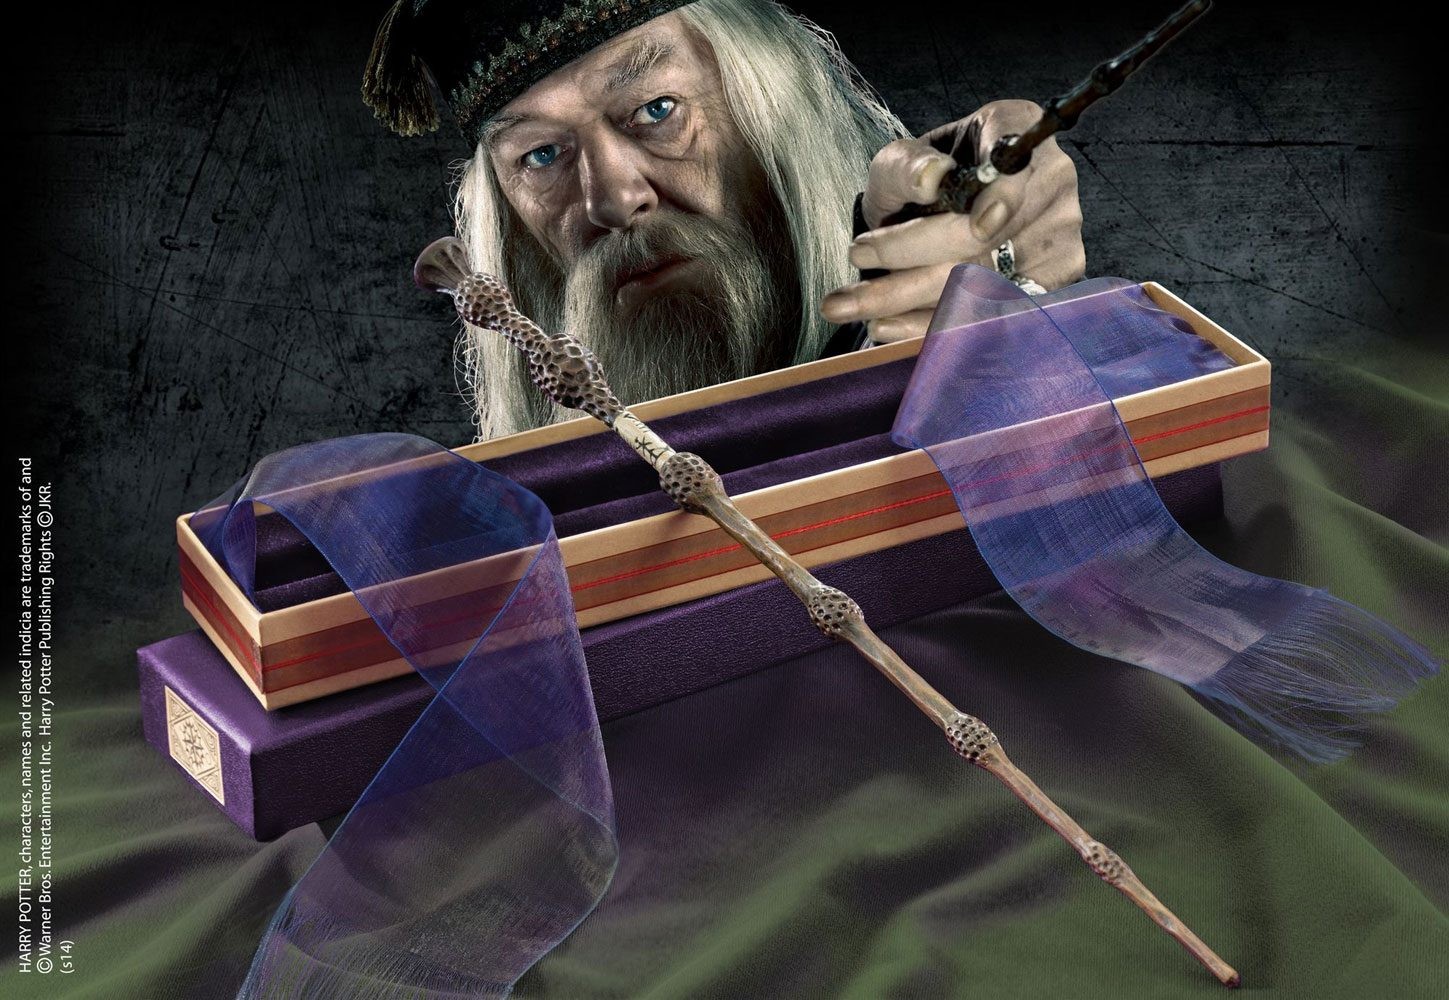 Baguette de Sureau (Dumbledore) - Harry Potter. Les plus amusants